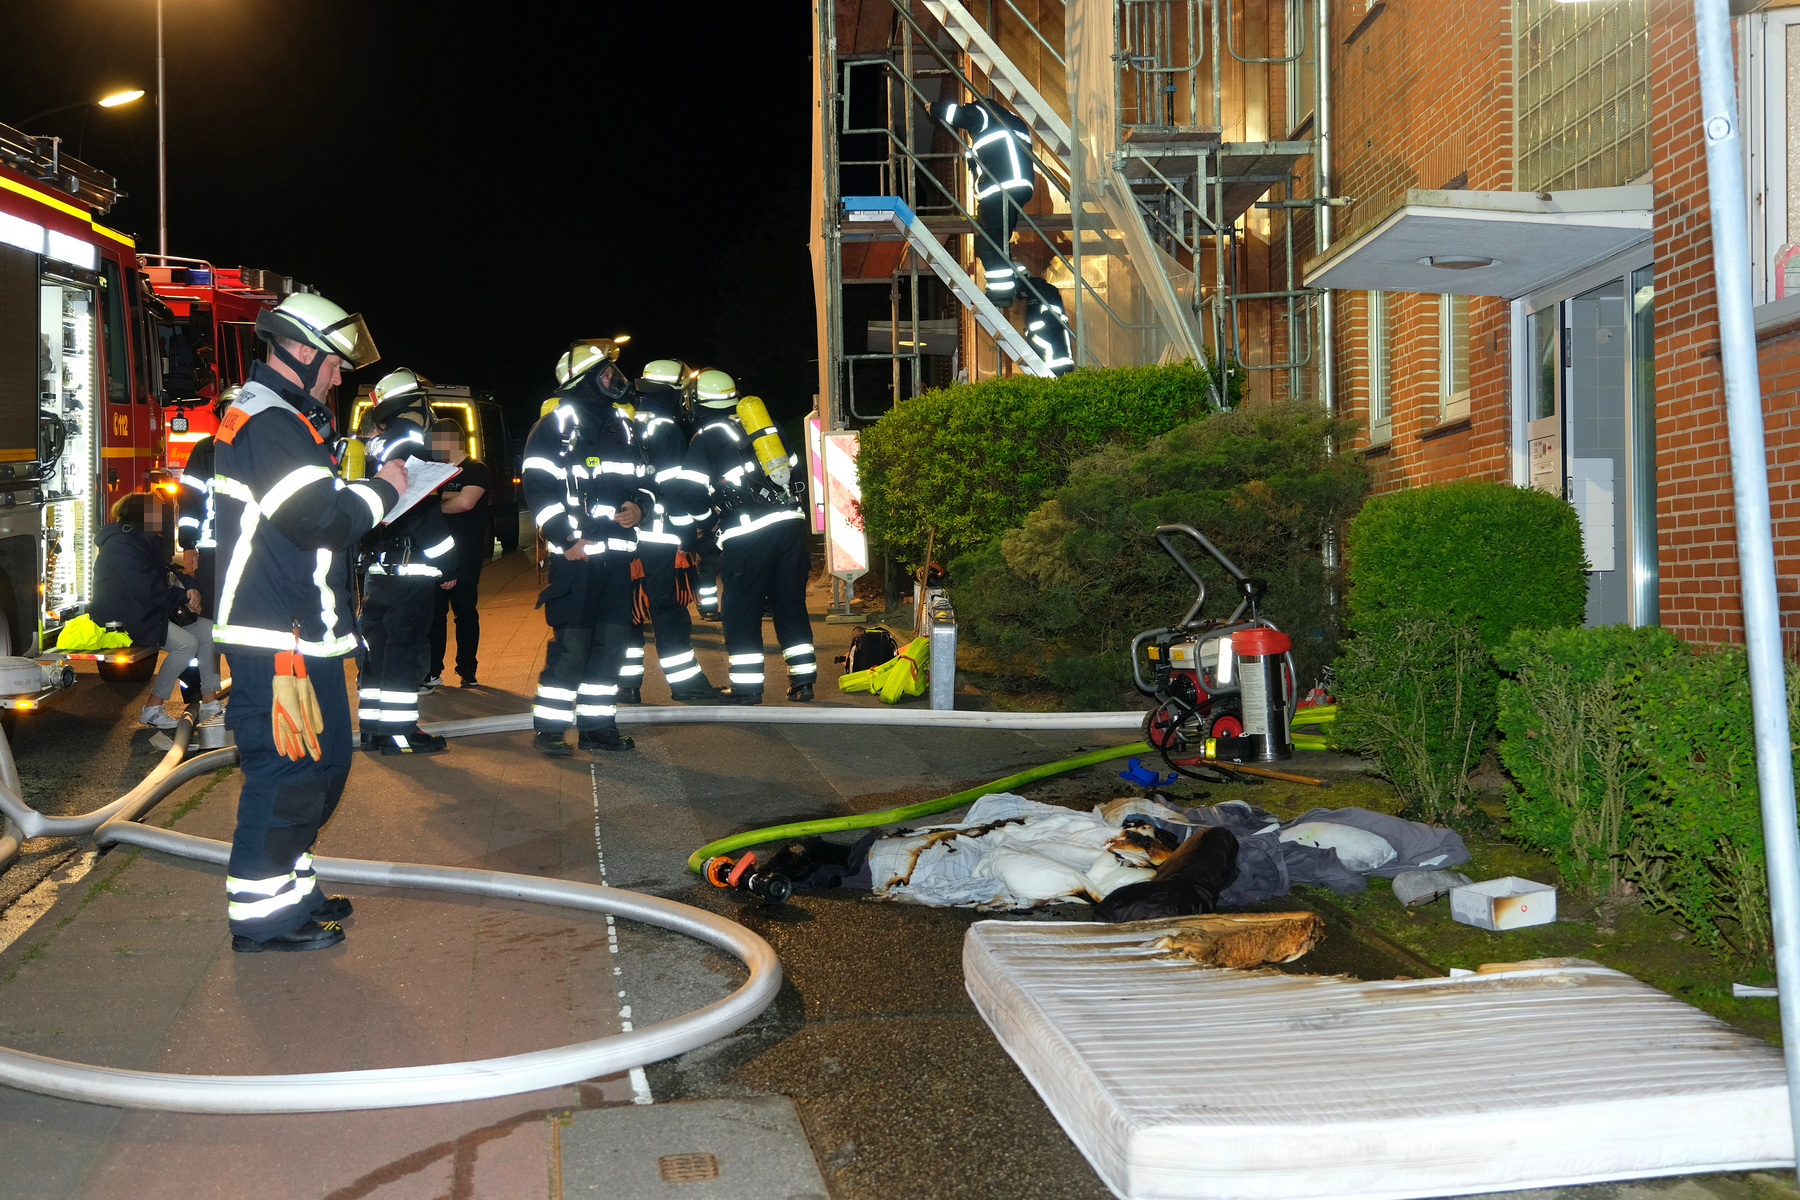 16 Feuerwehrleute waren bei dem Brand in Lohbrügge im Einsatz. Das gesamte Haus wurde evakuiert.